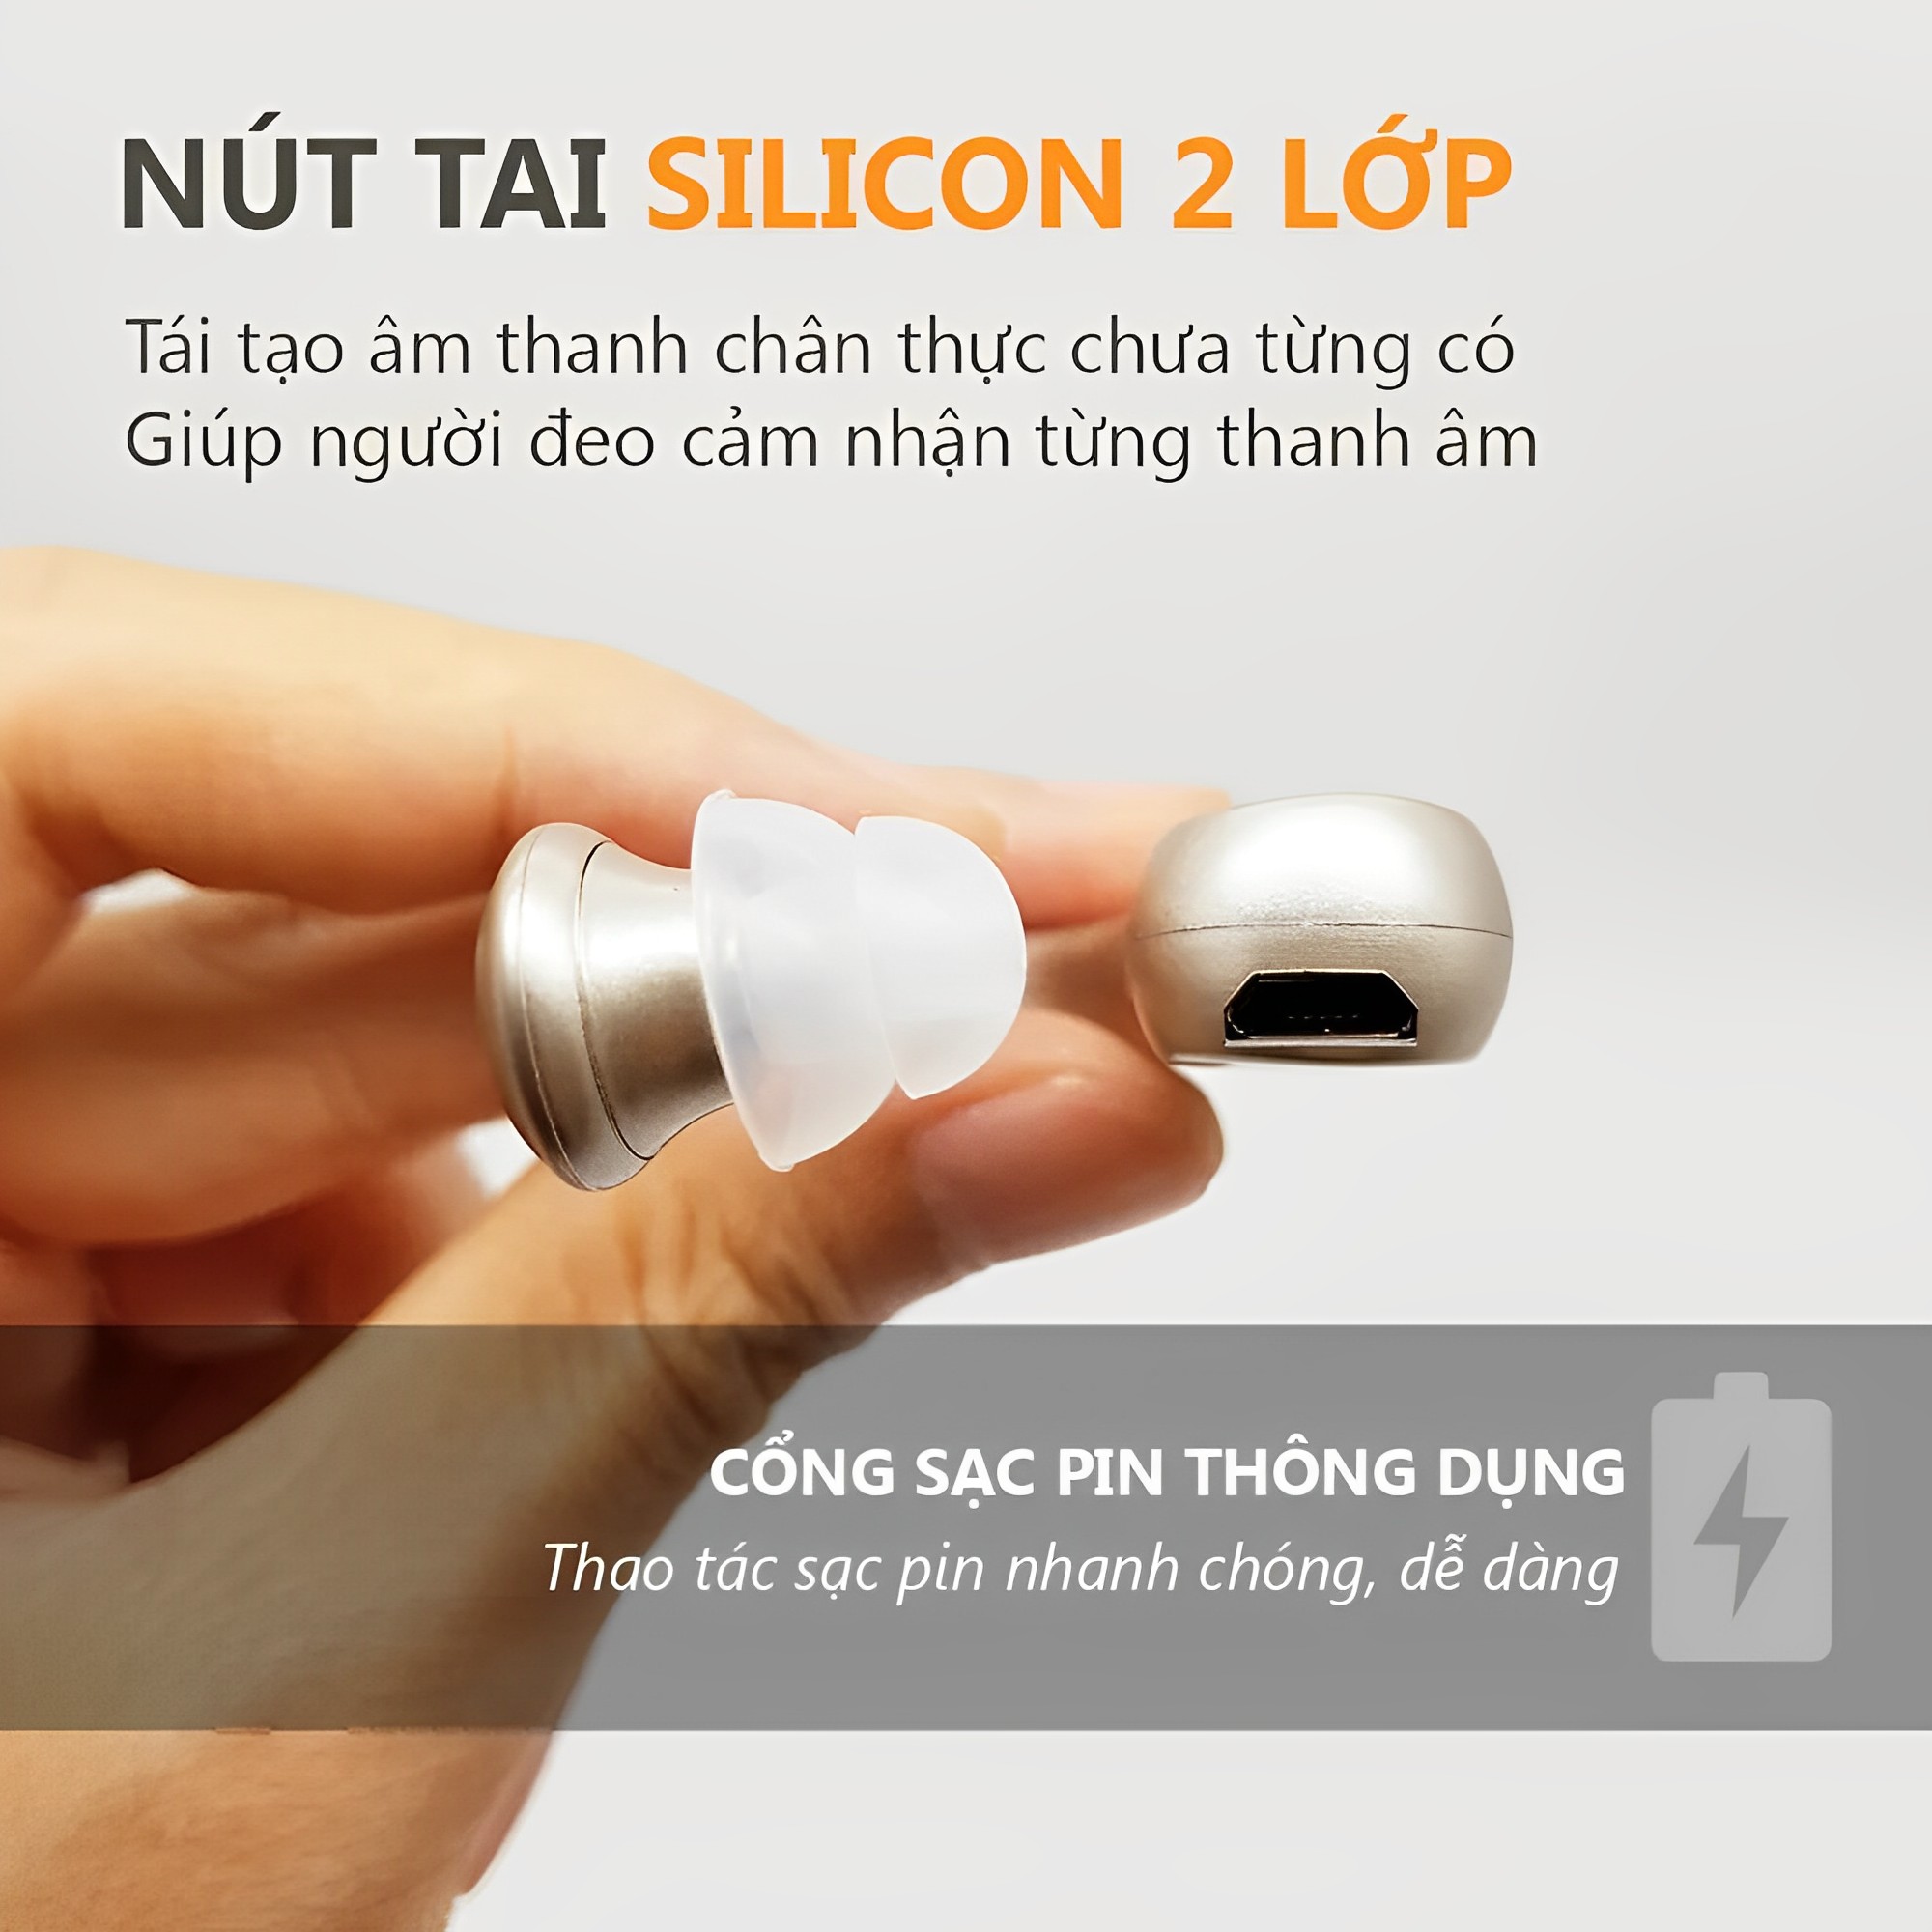 Tai nghe trợ thính,máy trợ thính không dây VHP1204,hỗ trợ giao tiếp dễ dàng cho người khiếm thính